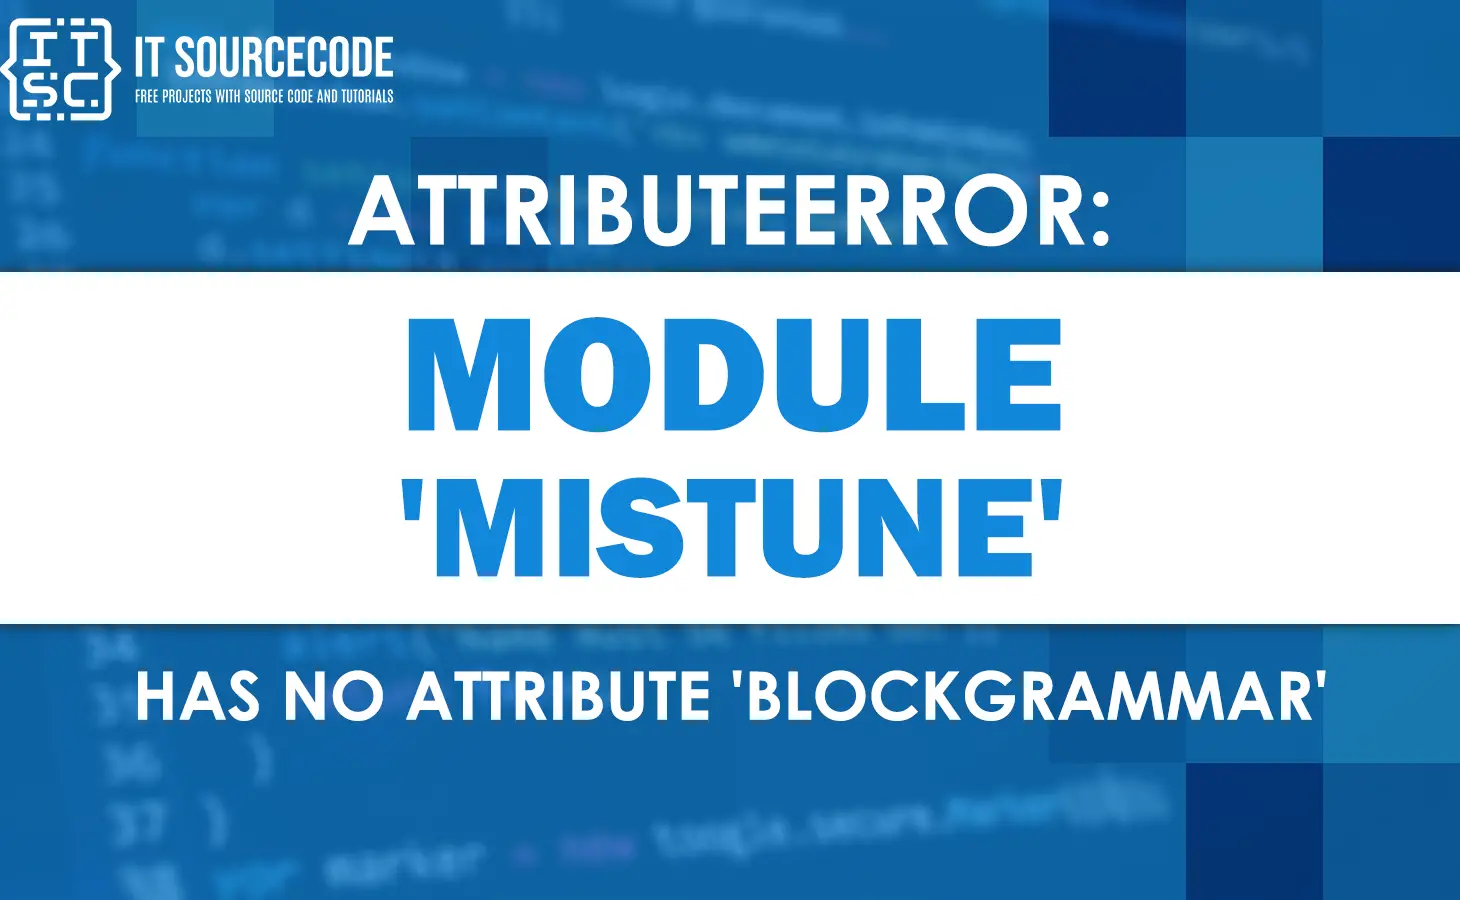 Attributeerror module mistune has no attribute blockgrammar